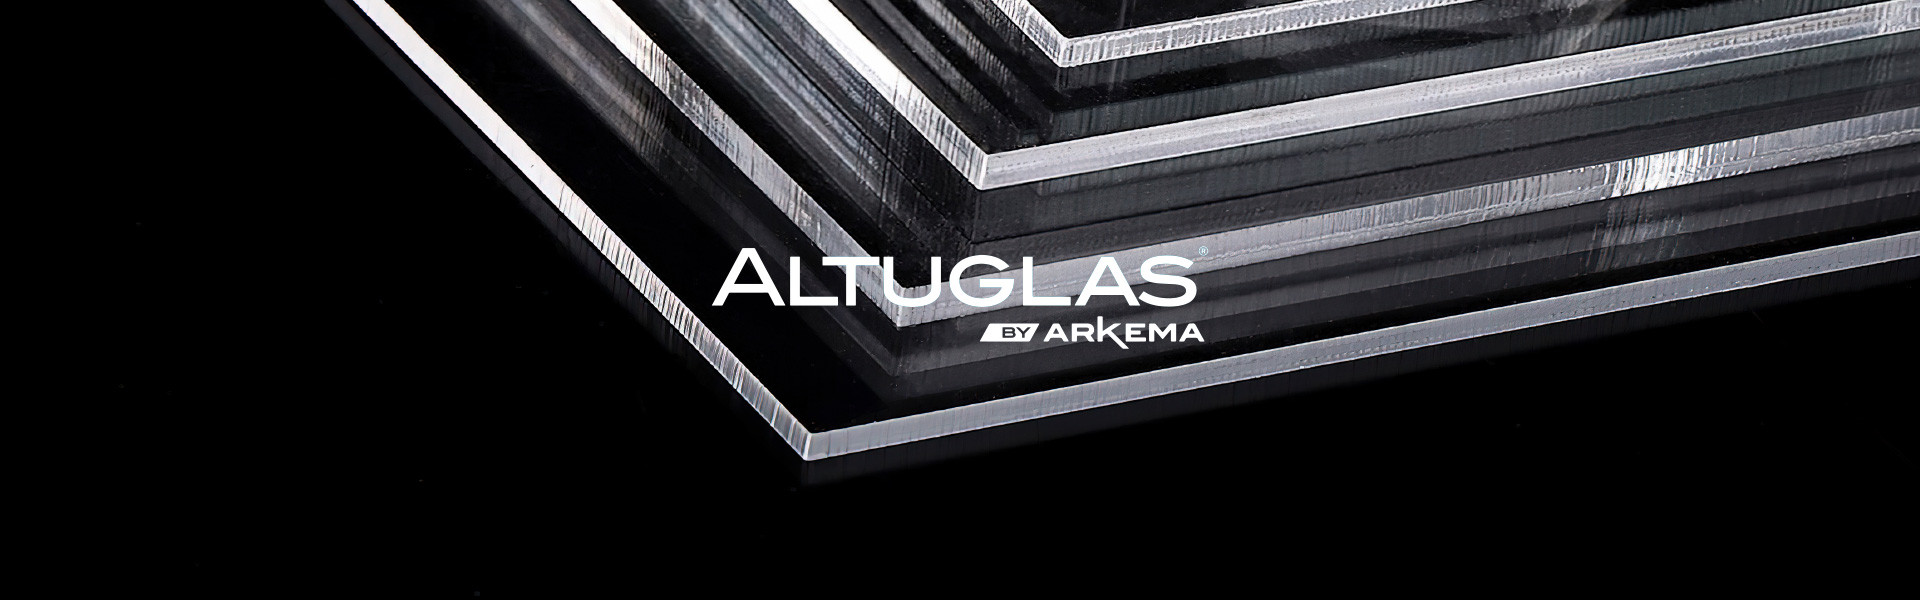 Акция на экструдированный прозрачный акрил ALTUGLAS толщиной 4 мм